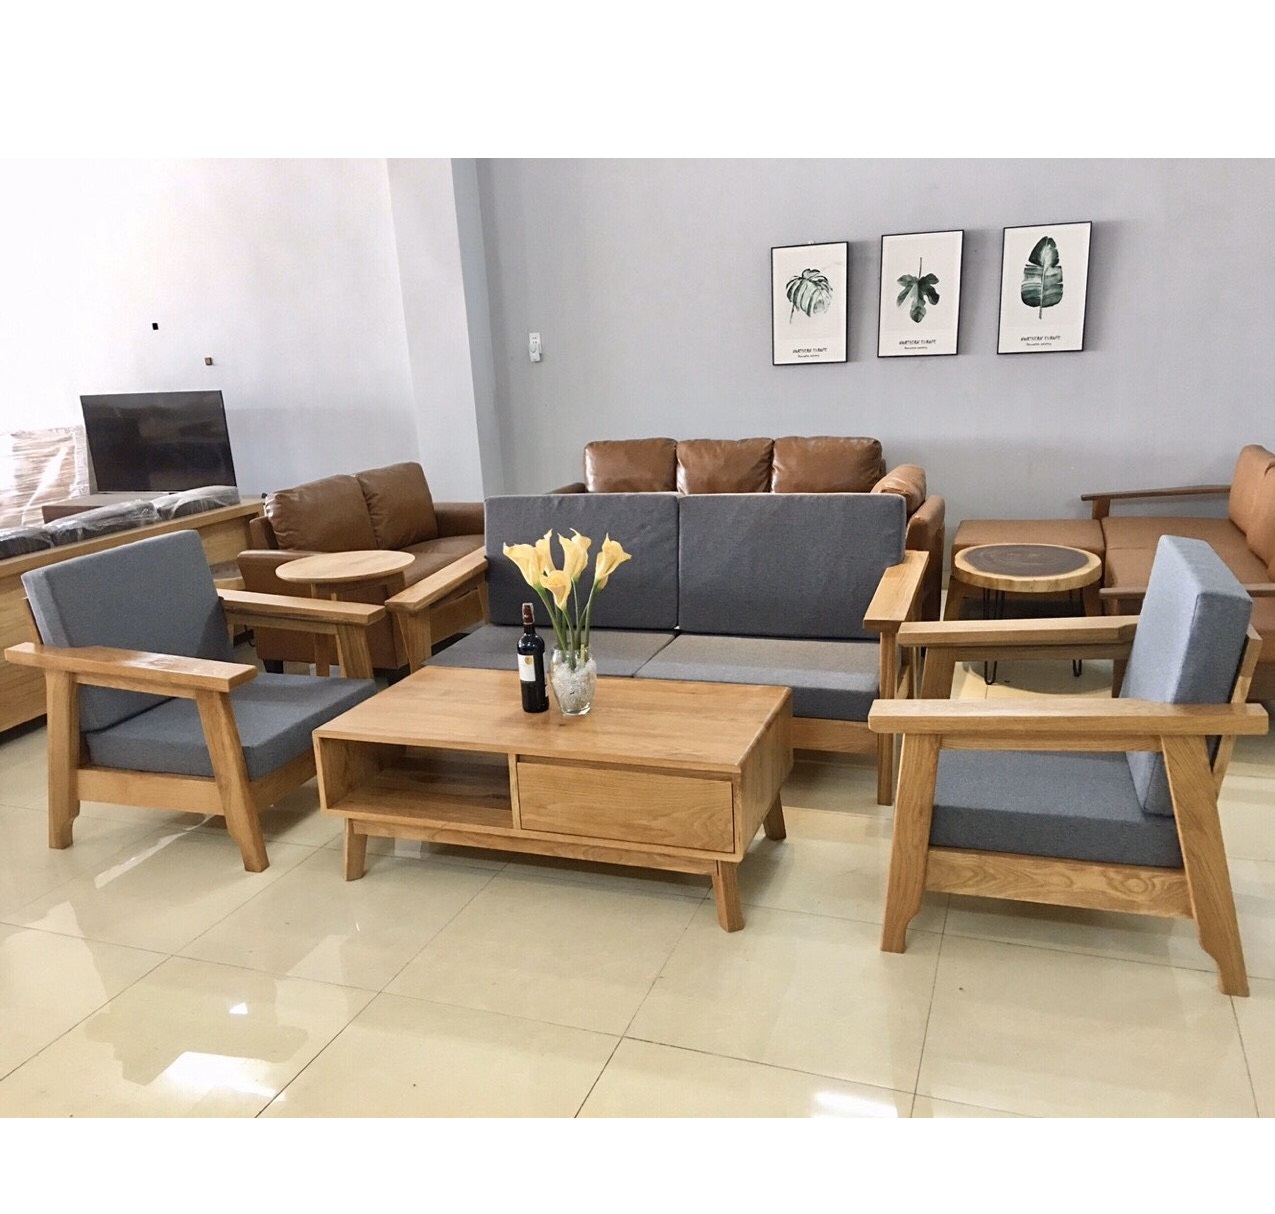 Bộ bàn ghế phòng khách gỗ sồi Mỹ sẽ làm điểm nhấn cho mọi không gian phòng khách của bạn. Với thiết kế tinh tế và sự tỉ mỉ trong từng chi tiết, những sản phẩm của chúng tôi đang chờ đón bạn.